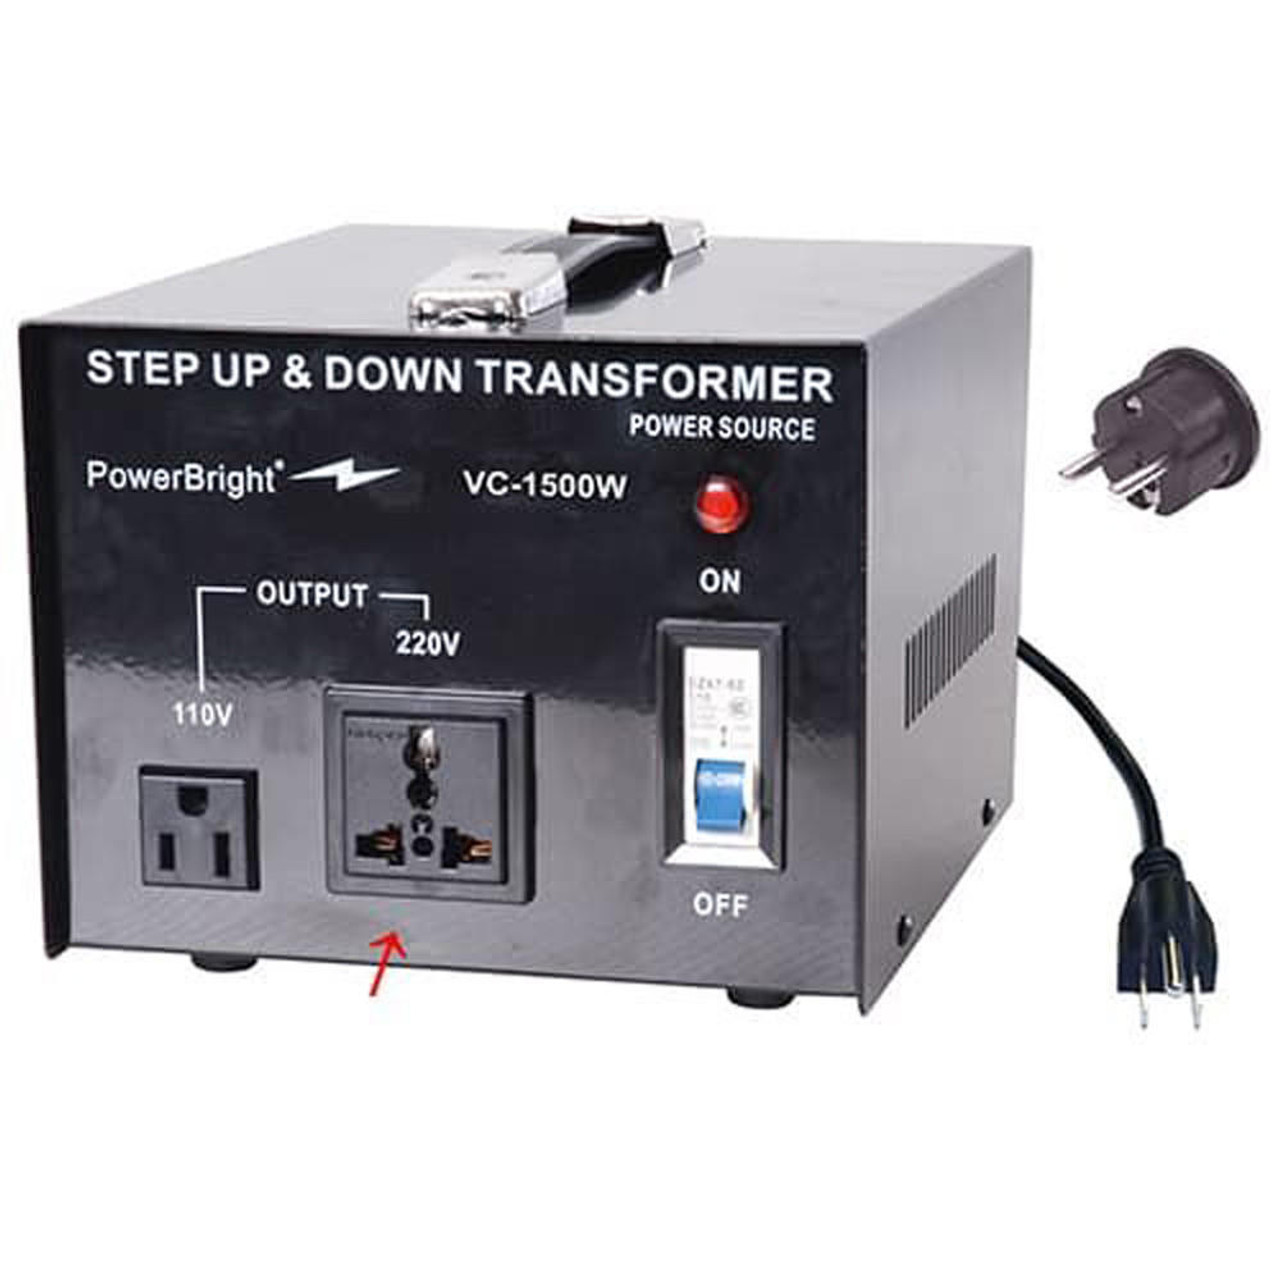 A basic step-down transformer.